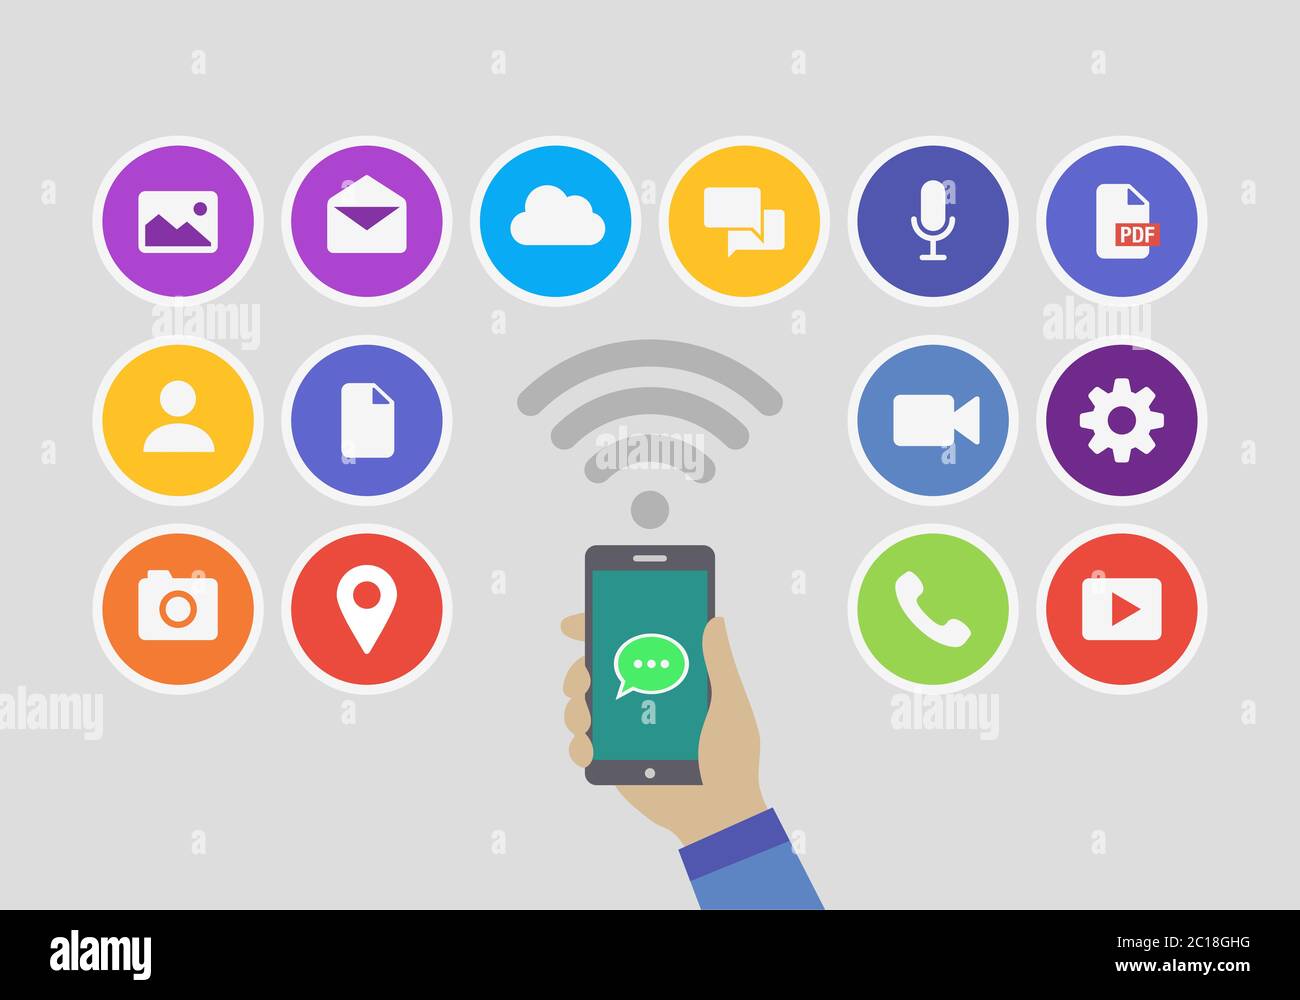 Symbol für den Dienst der Online-Messaging-App mit einem Smartphone. Einfaches flaches minimalistisches Messenger Icon Element Stock Vektor